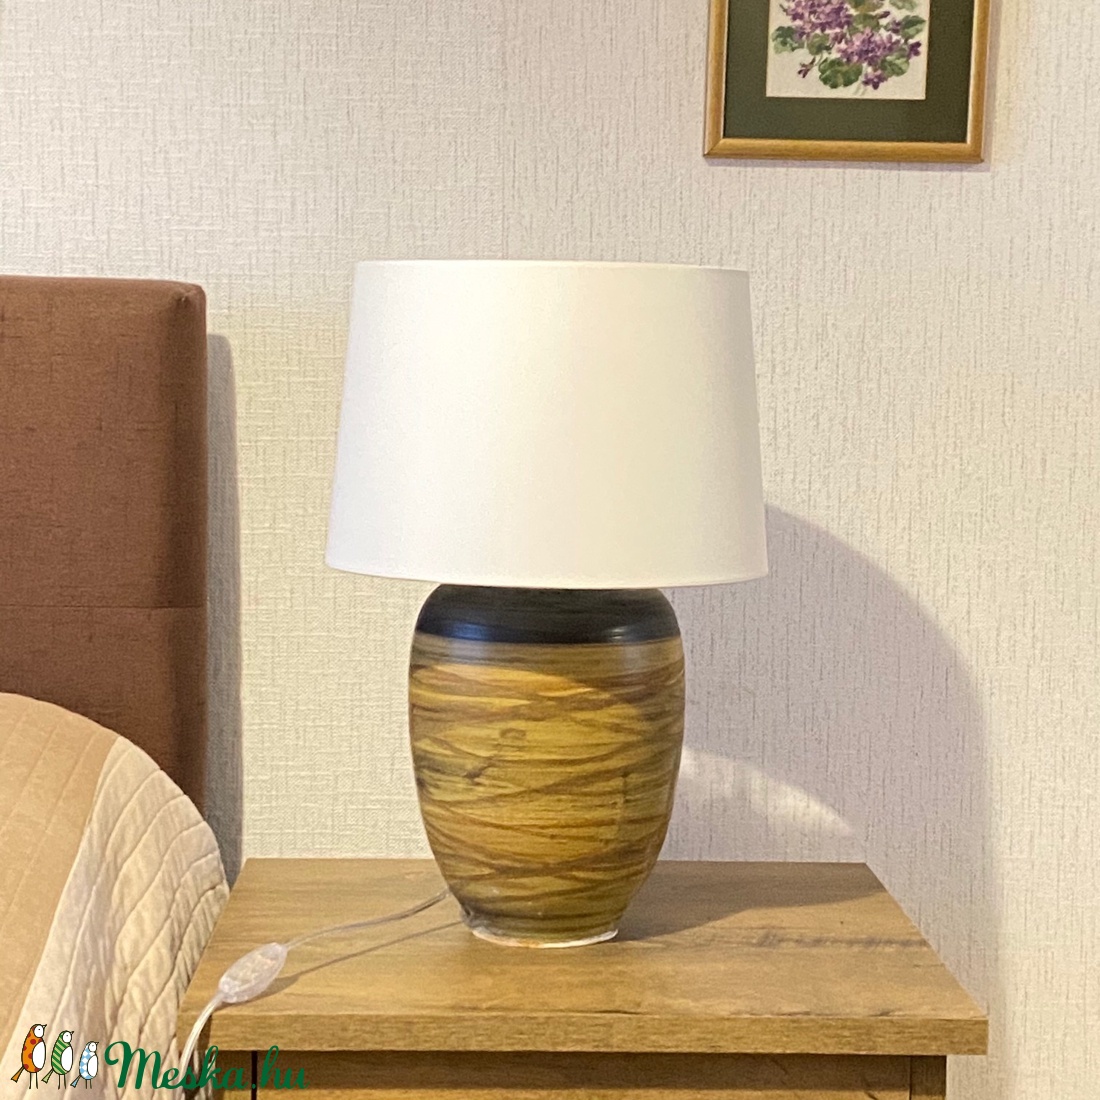 Egyedi esztali lámpa - Kerámia asztali lámpa - otthon & lakás - lámpa - asztali lámpa - Meska.hu